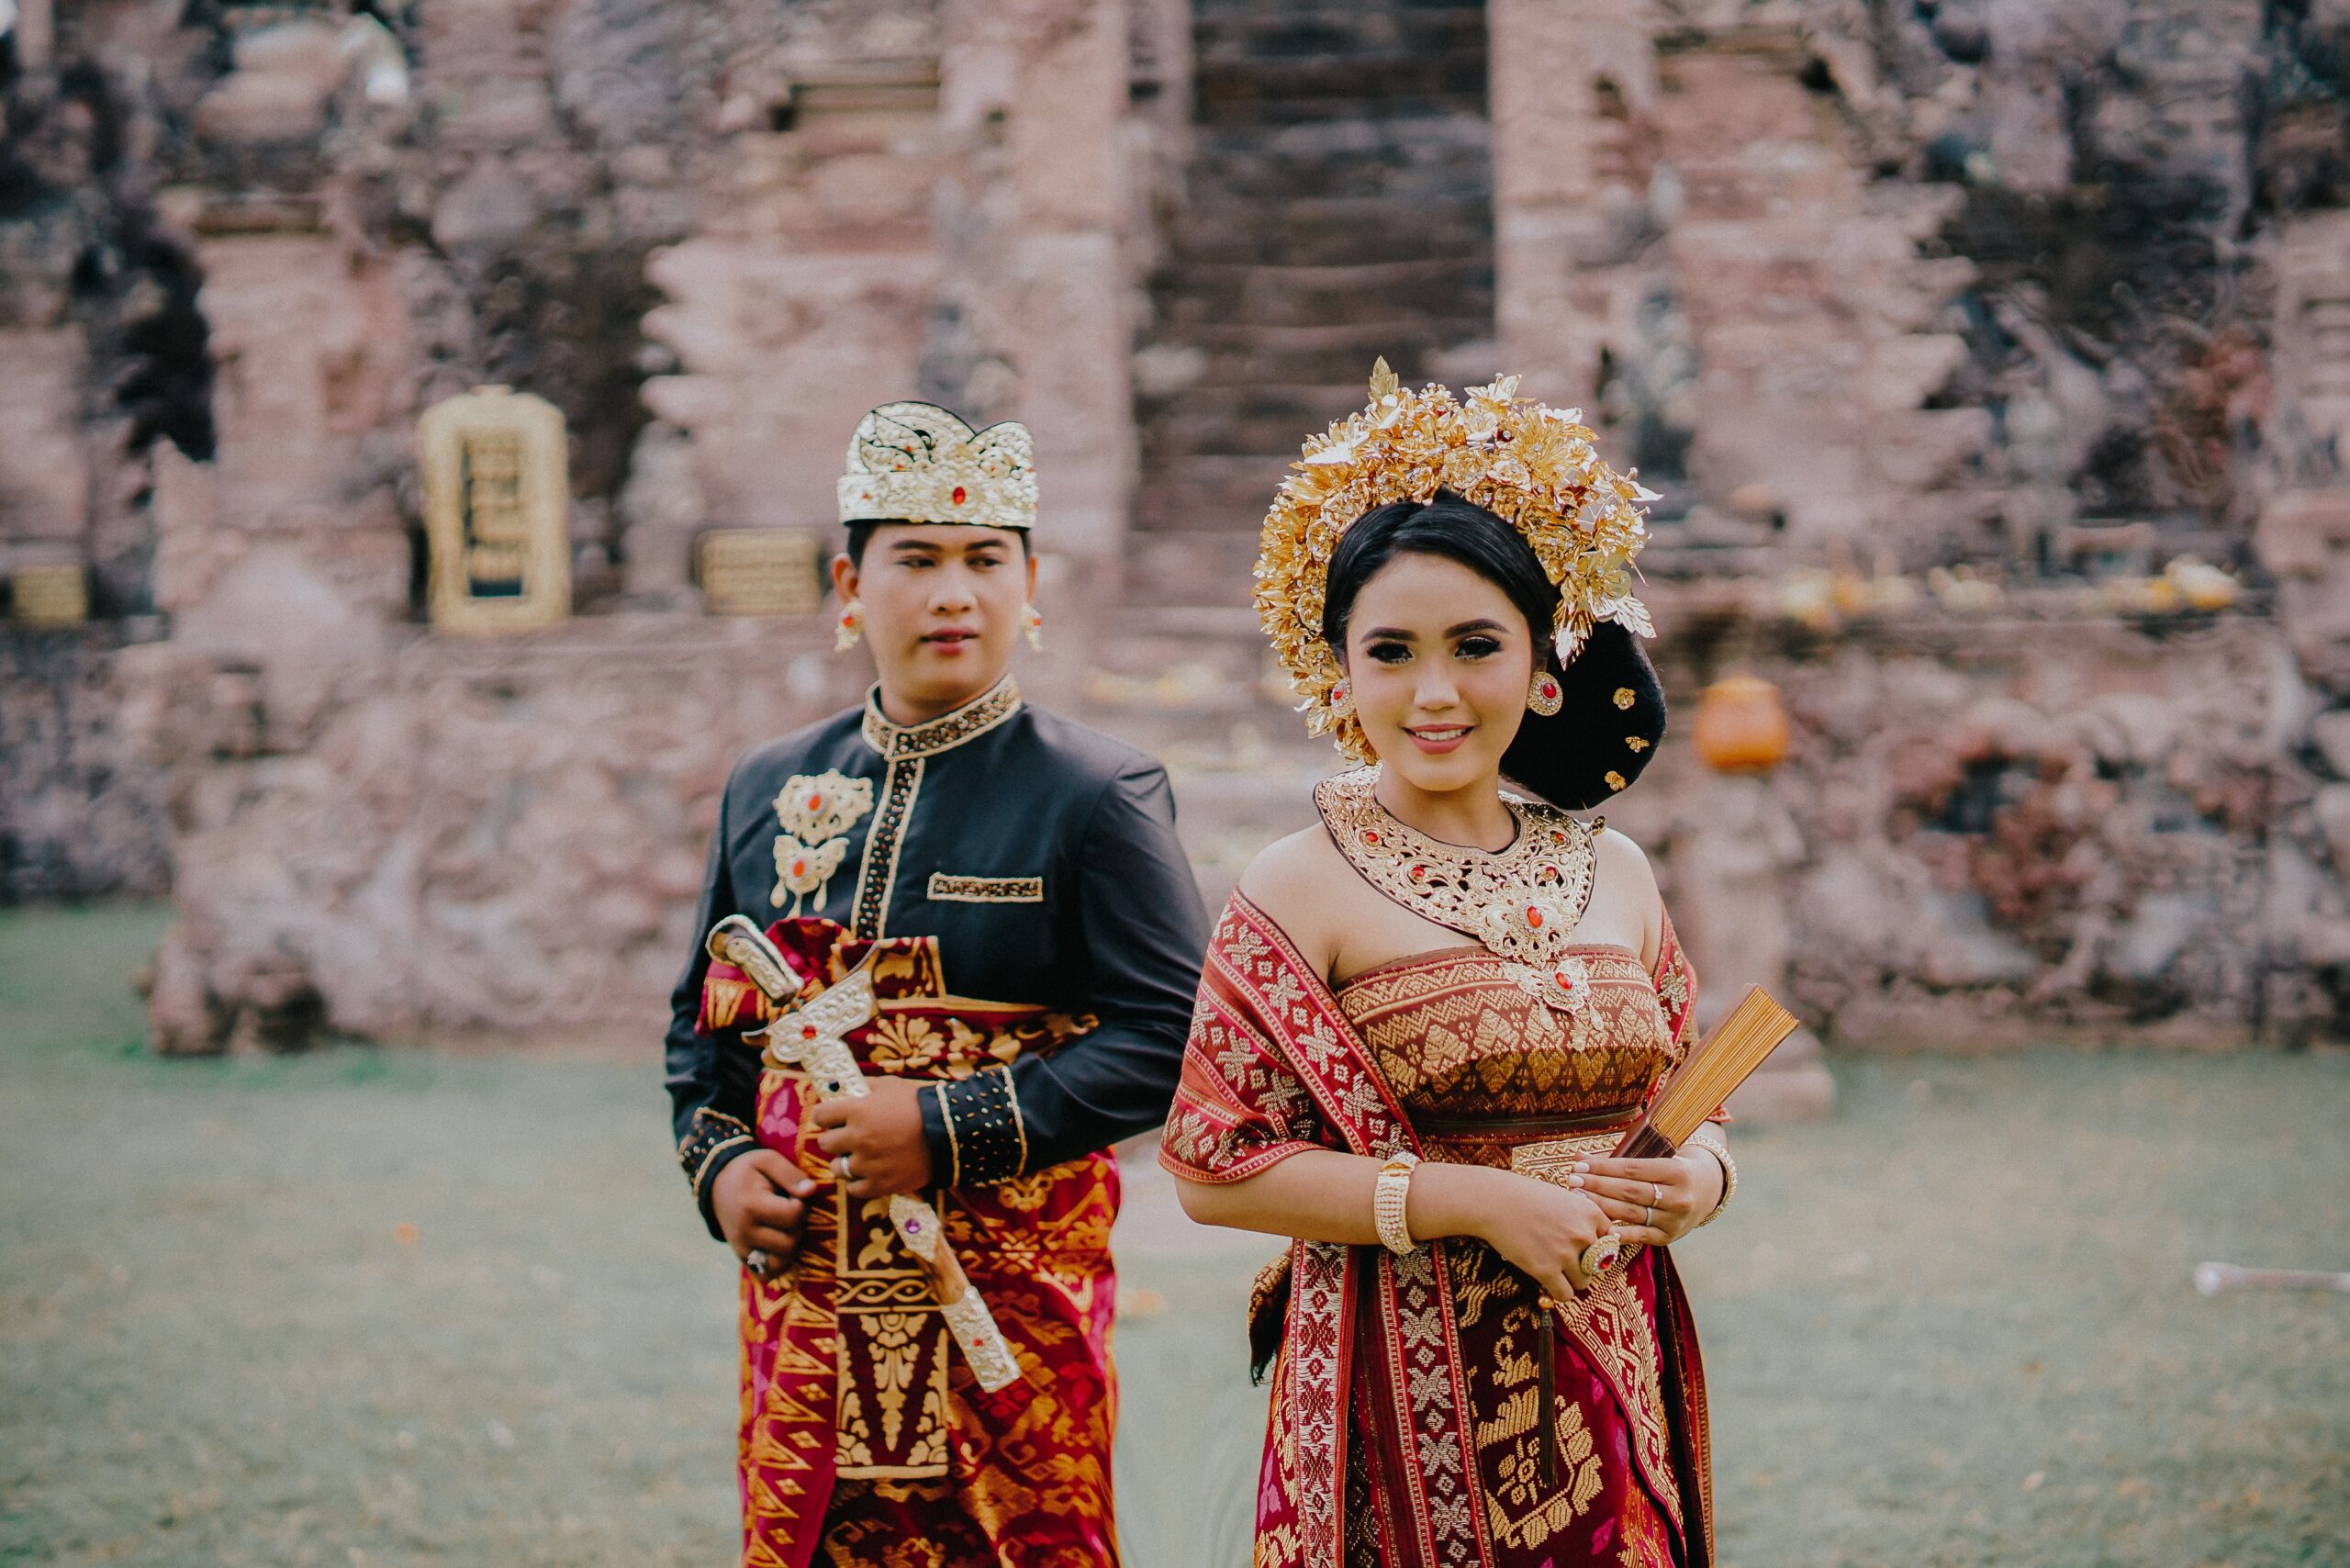 Balinese weddings